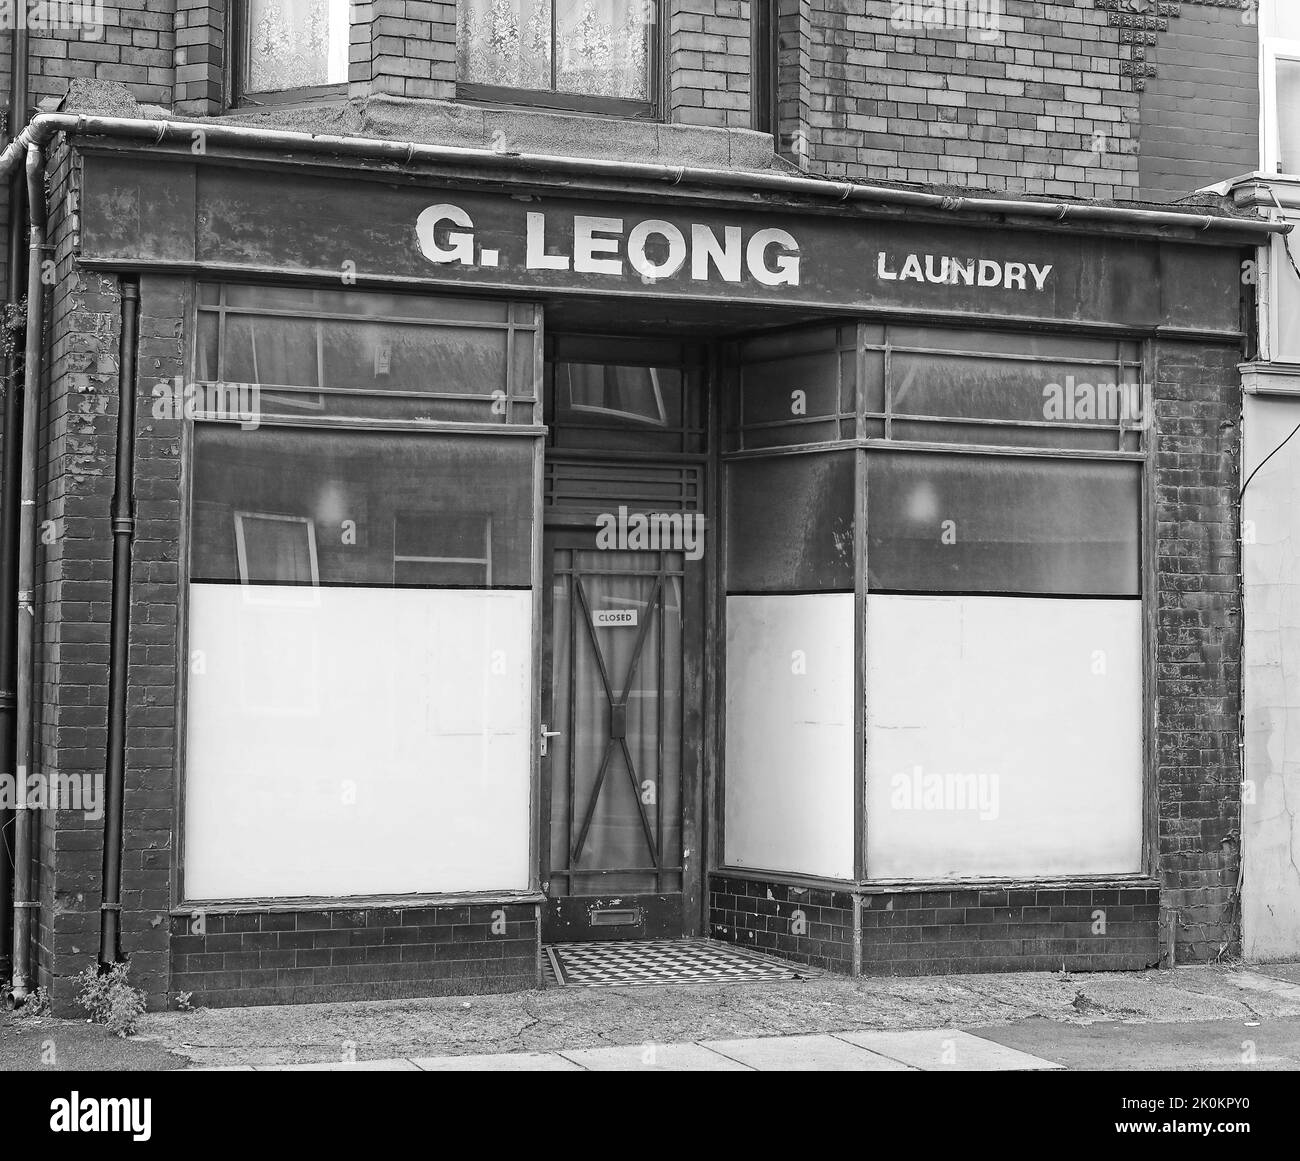 Haunting storico negozio di lavanderia cinese, G.Leong, 117 penny Lane, Liverpool, Merseyside, Inghilterra, Regno Unito, L18 - apparentemente infestato BW Foto Stock